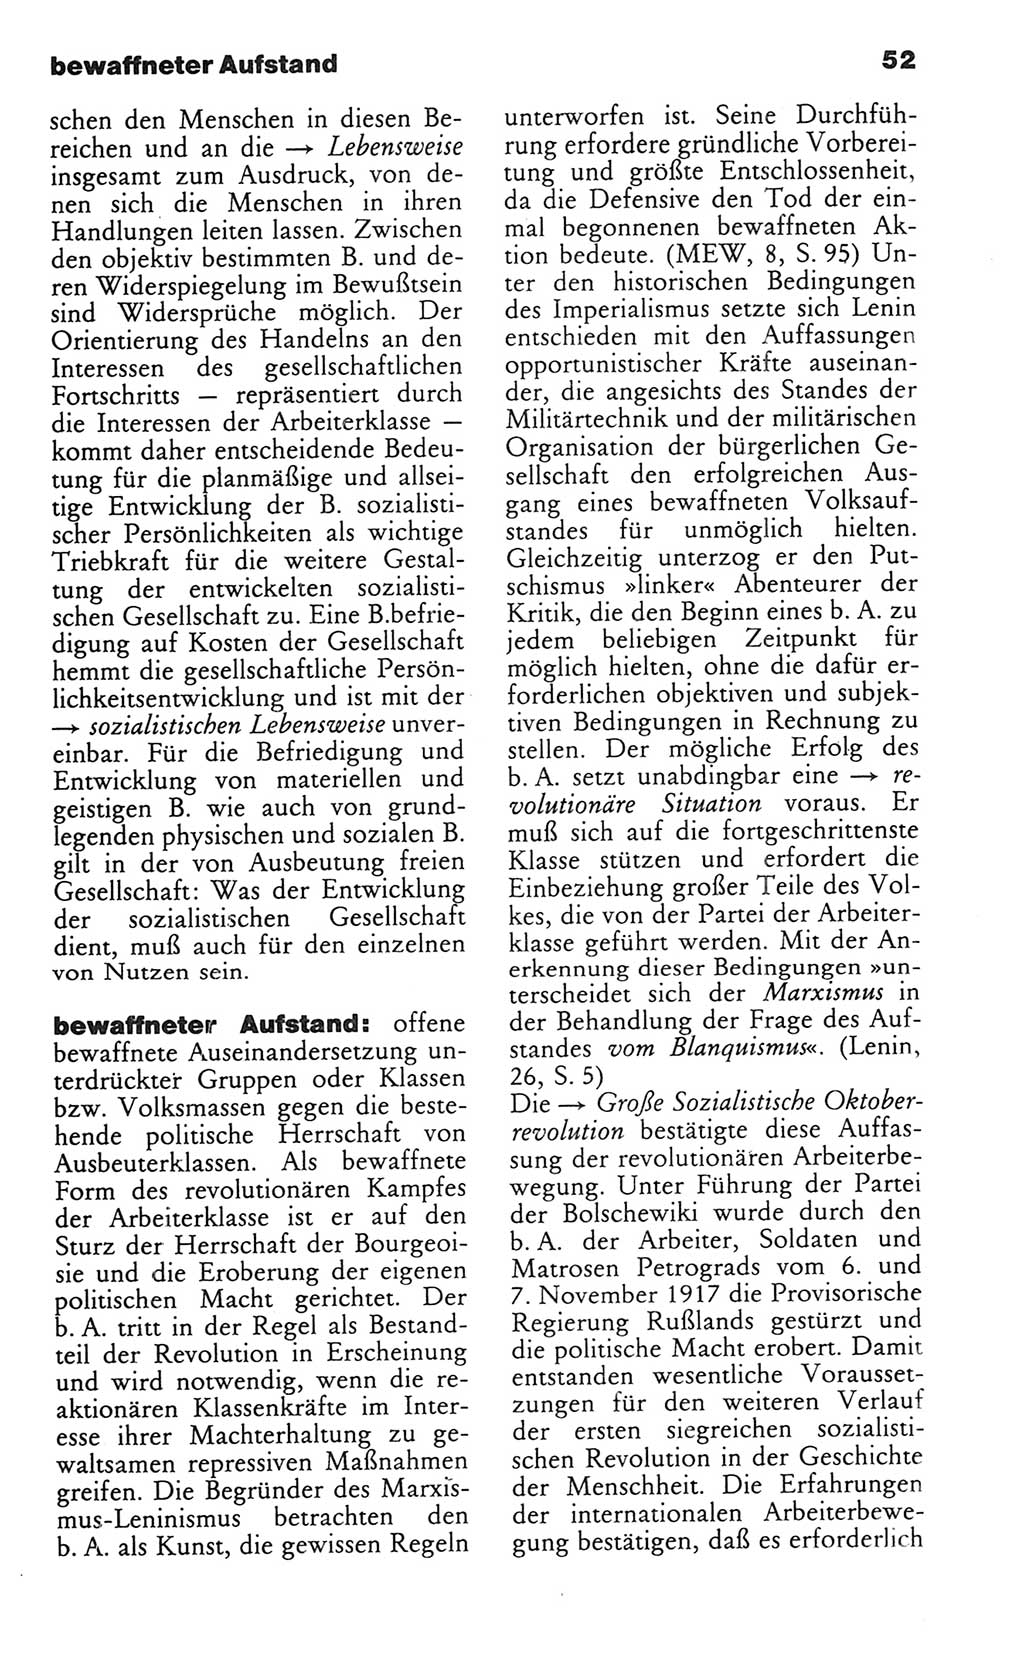 Wörterbuch des wissenschaftlichen Kommunismus [Deutsche Demokratische Republik (DDR)] 1982, Seite 52 (Wb. wiss. Komm. DDR 1982, S. 52)